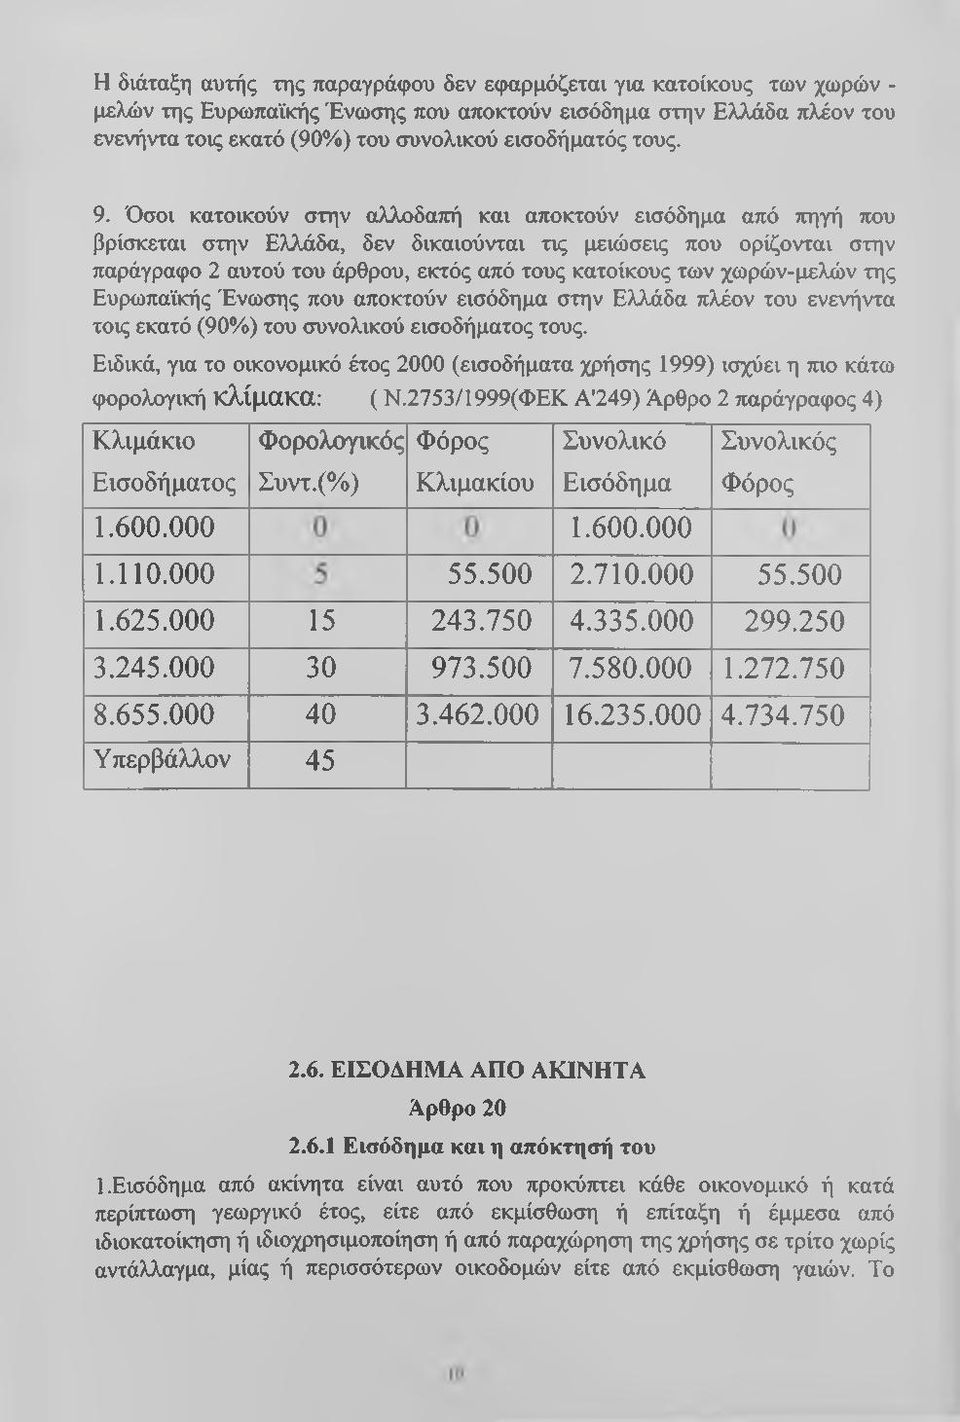 Όσοι κατοικούν στην αλλοδαπή και αποκτούν εισόδημα από πηγή που βρίσκεται στην Ελλάδα, δεν δικαιούνται τις μειώσεις που ορίζονται στην παράγραφο 2 αυτού του άρθρου, εκτός από τους κατοίκους των